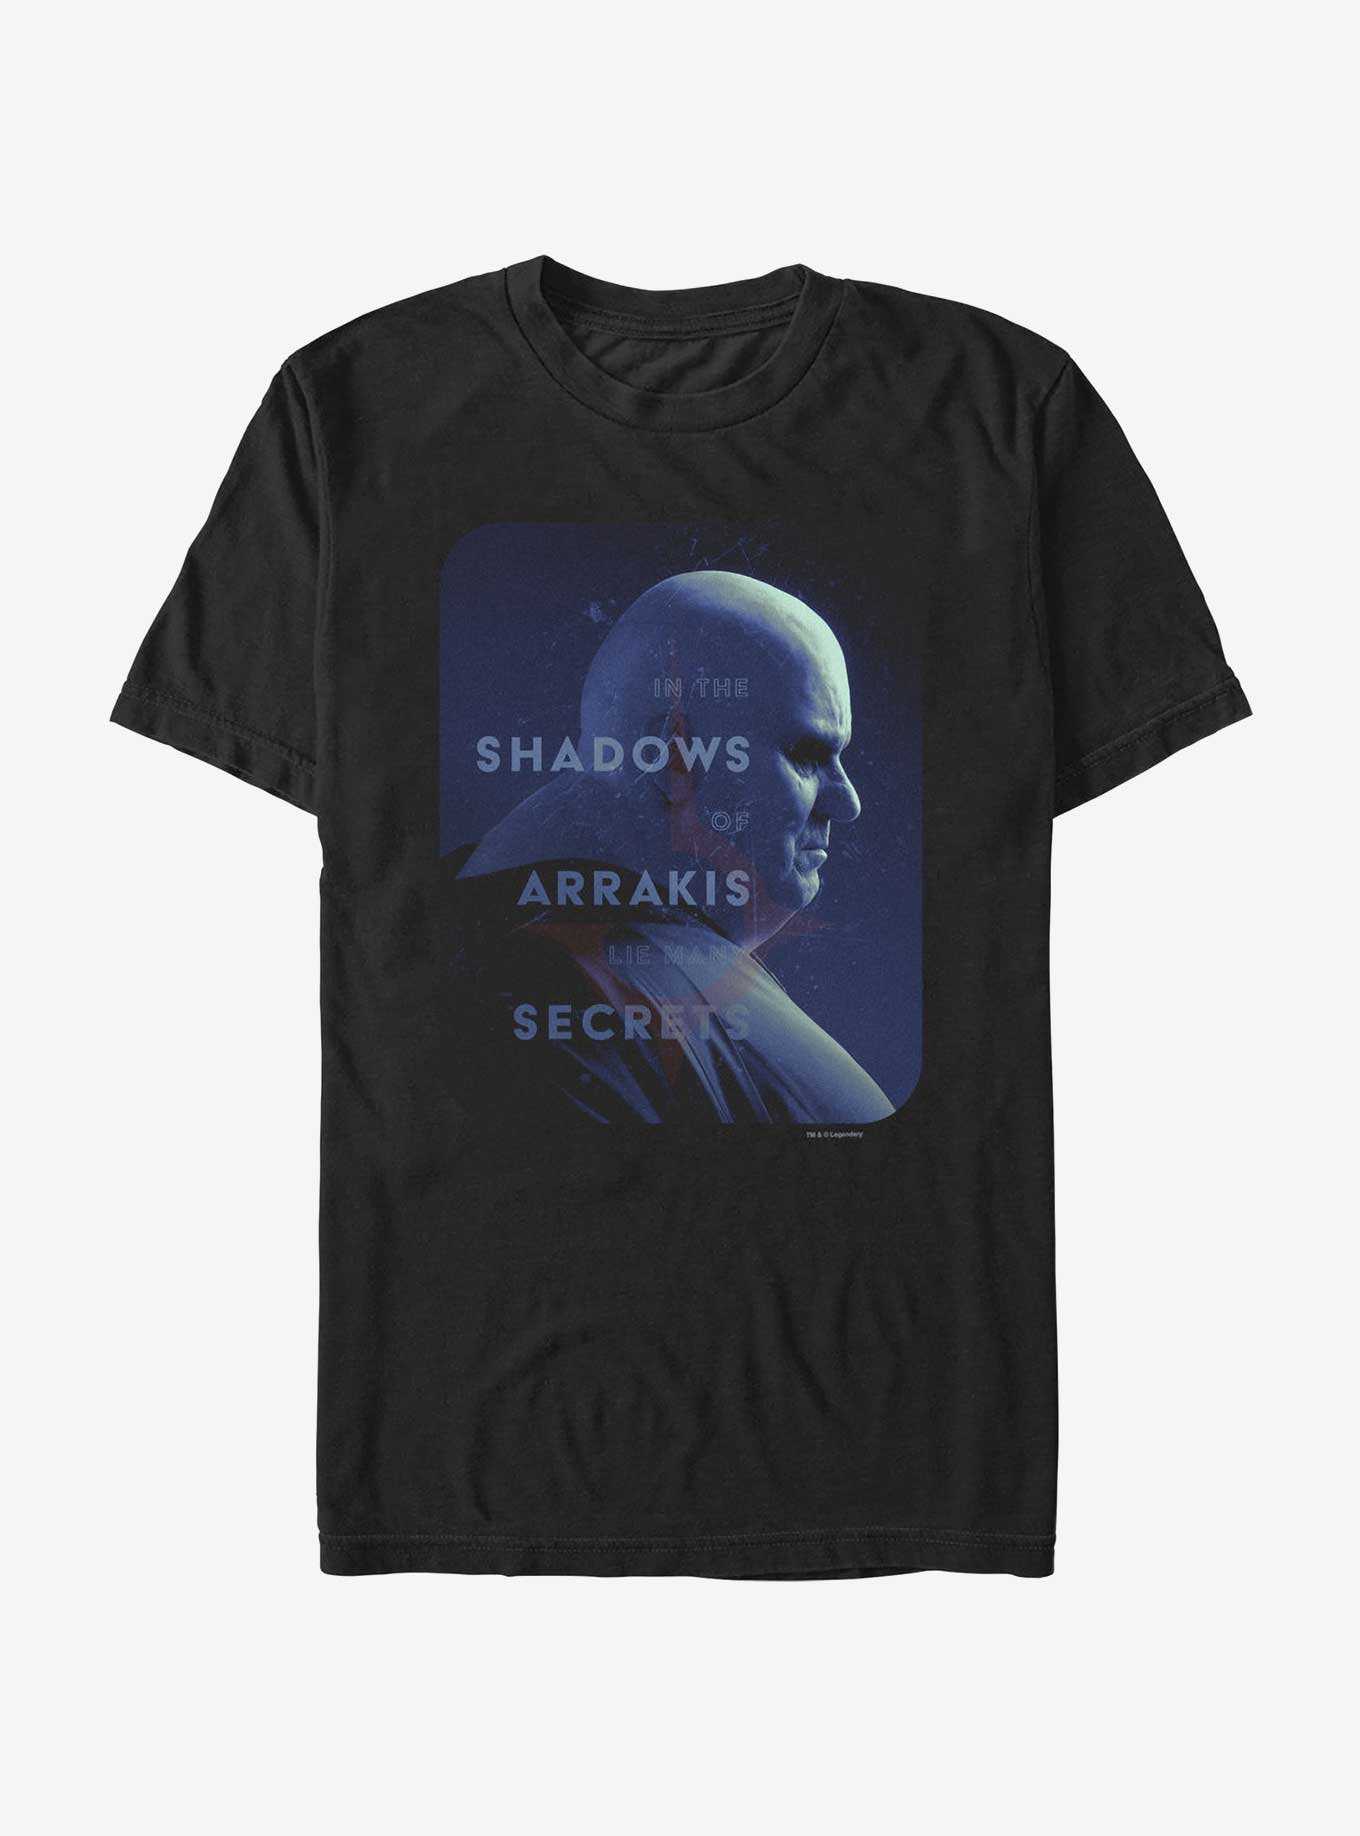 Dune The Baron Secrets Shadows T-Shirt, , hi-res